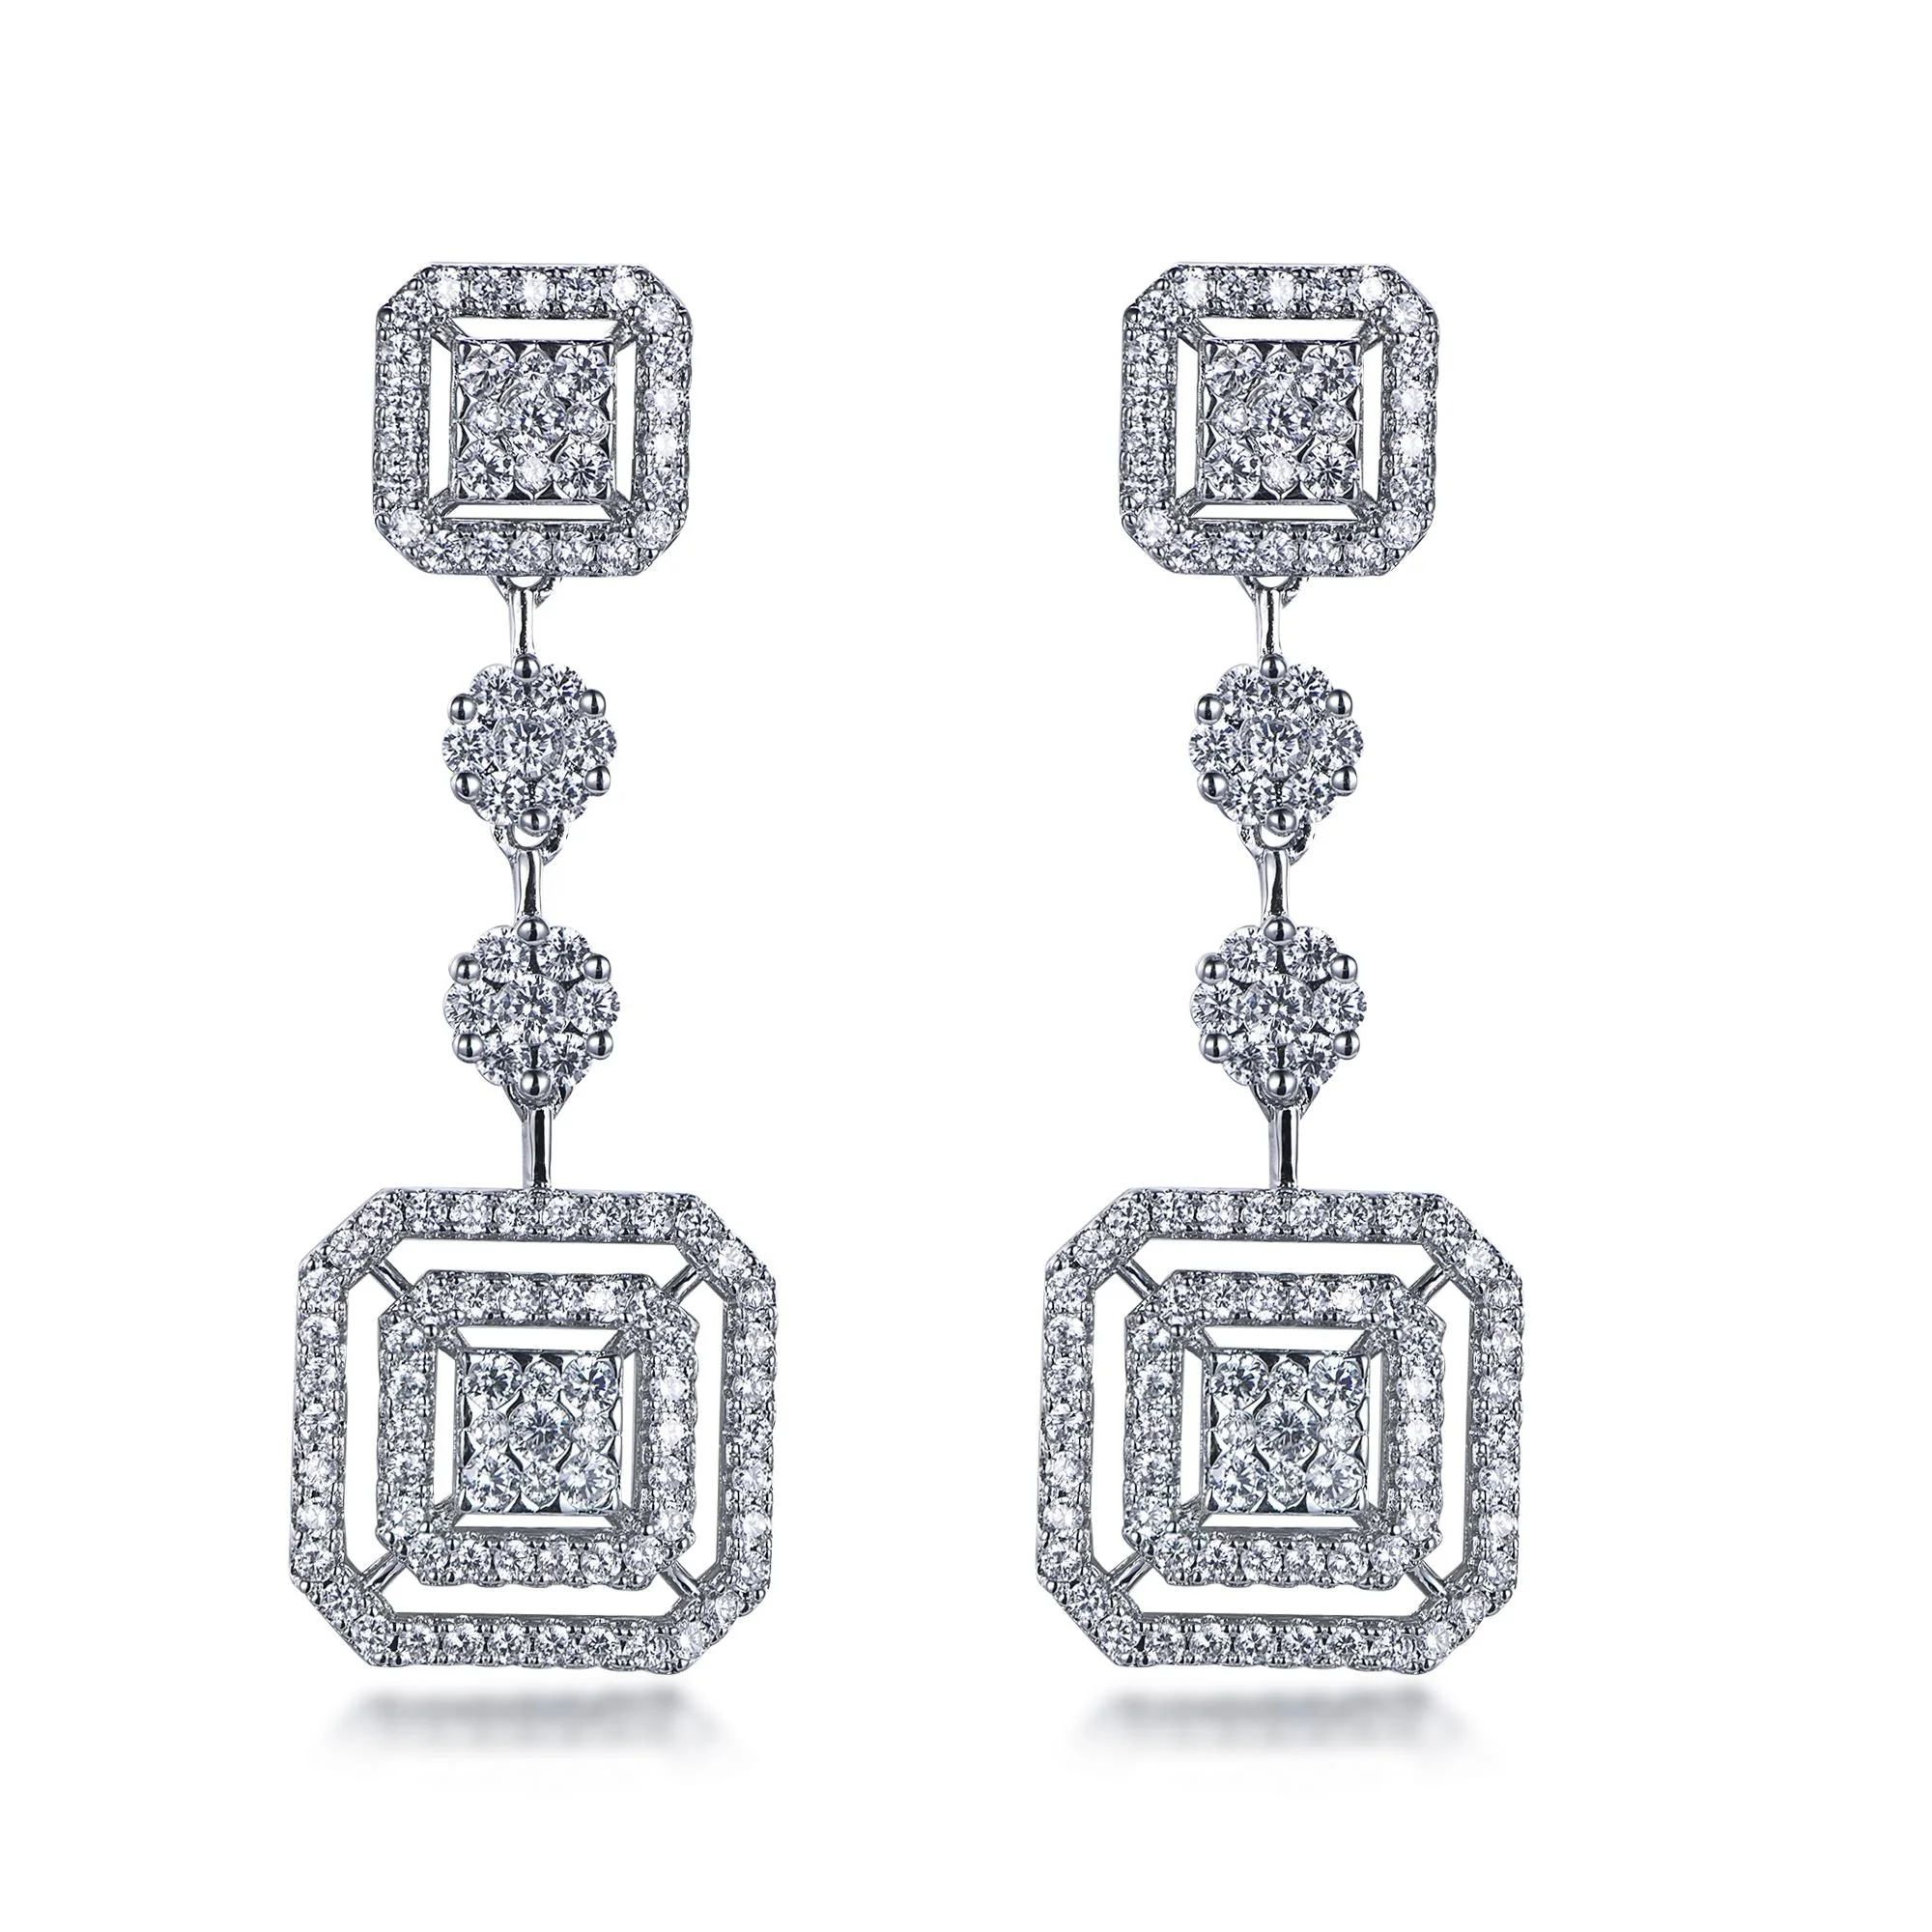 925 sterling silver earrings trendy women jewelry square shaped 5a cubic zirconia earrings dangle earrings